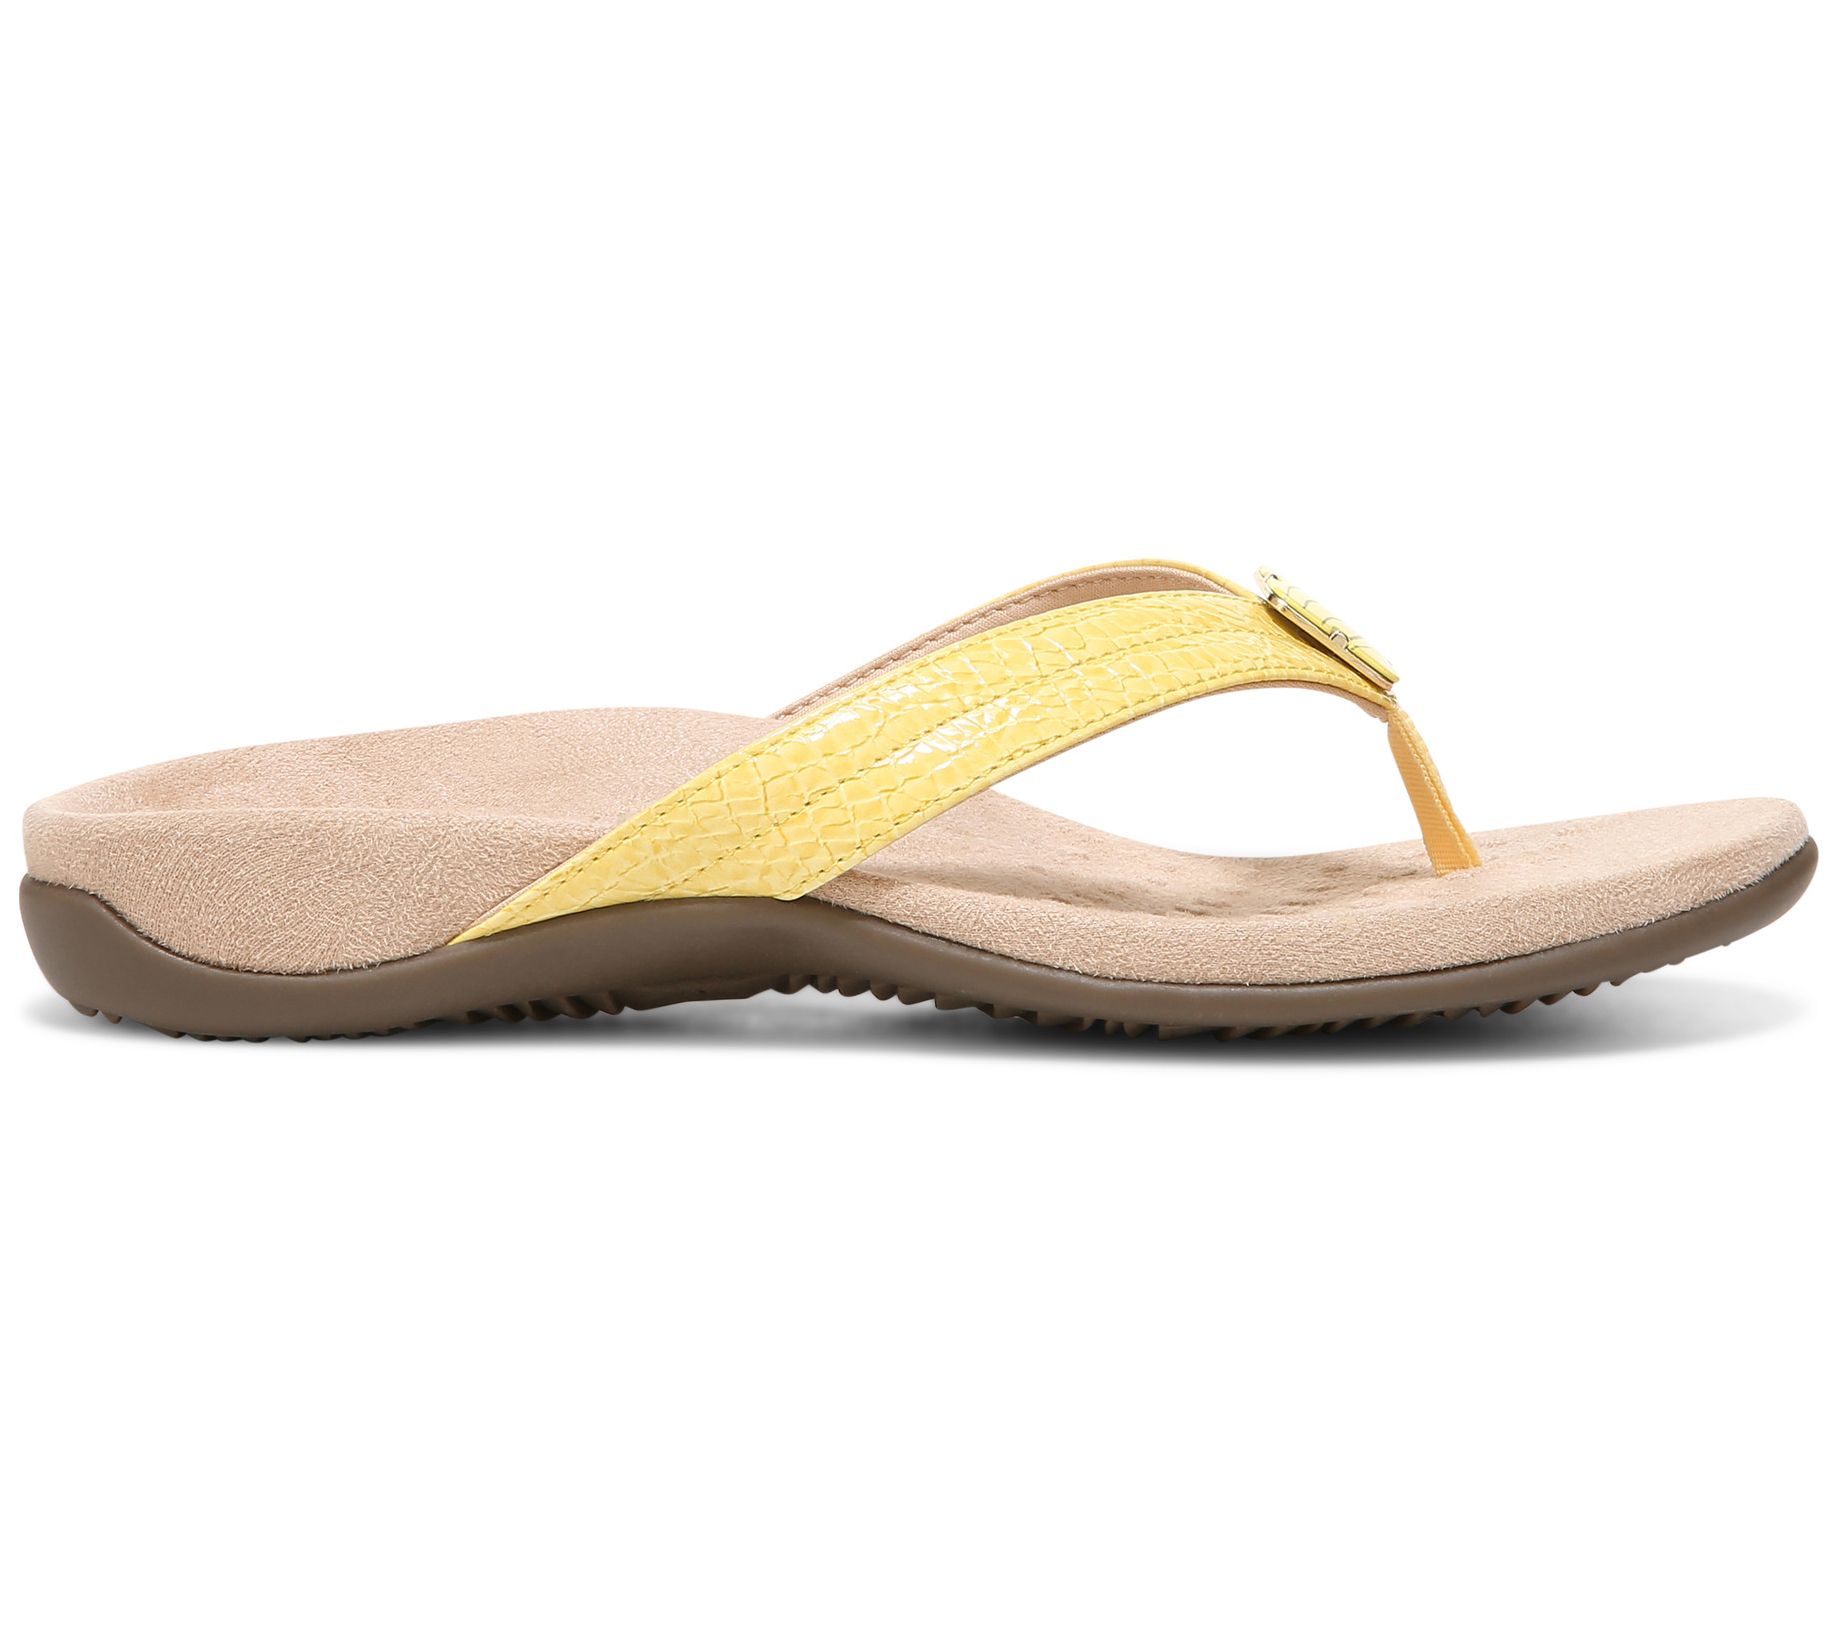 Vionic Thong Sandals - Avena - QVC.com